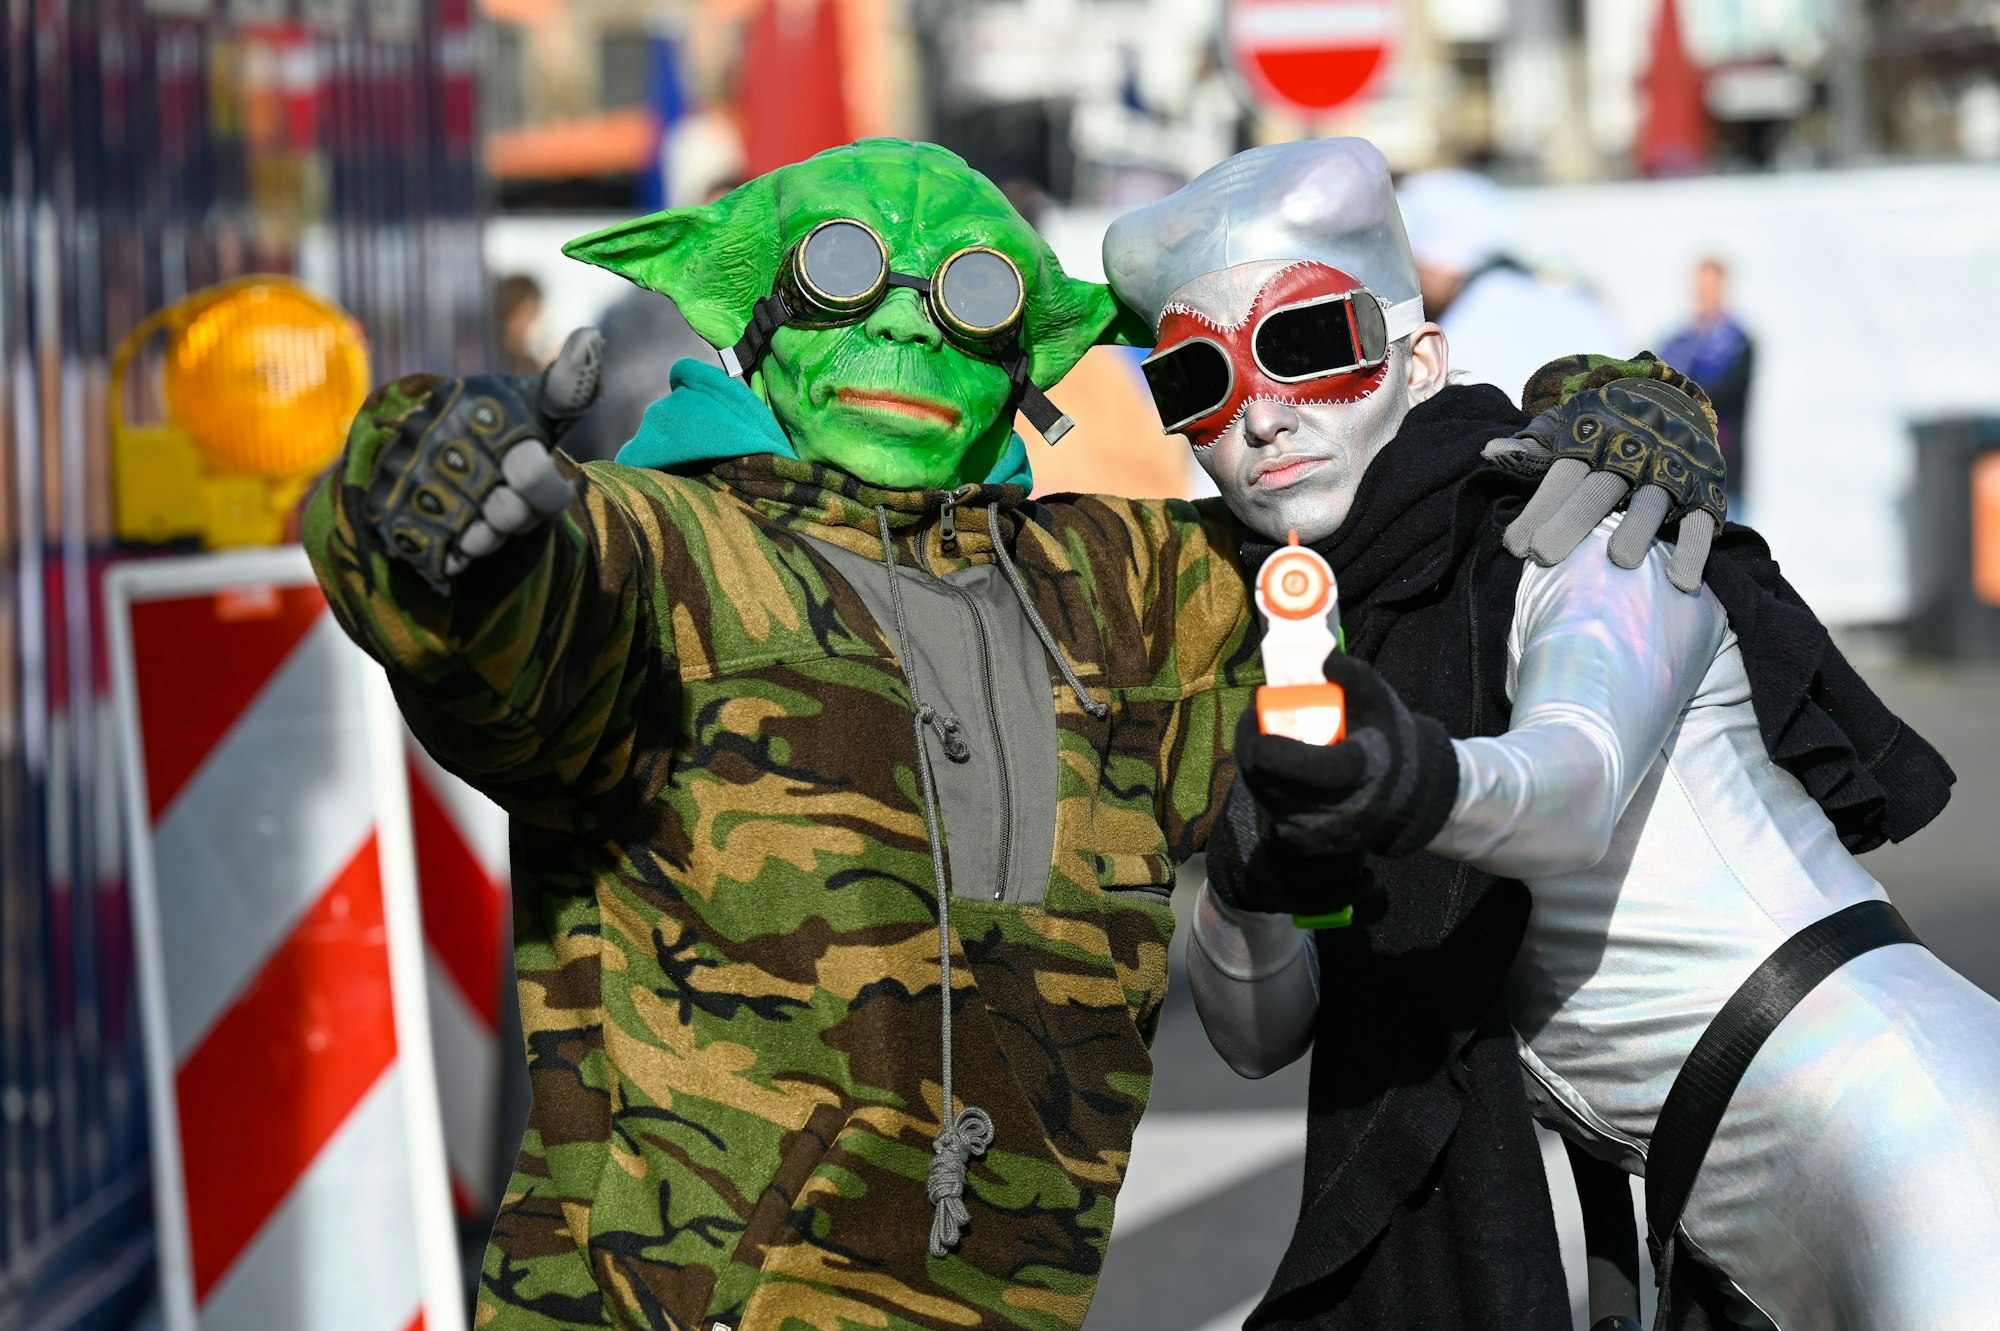 Zwei Männer sind als Außerirdische verkleidet. Einer trägt eine grüne Alien-Maske, der andere hat eine silberne Kopfbedeckung auf und trägt eine Waffe in der Hand.